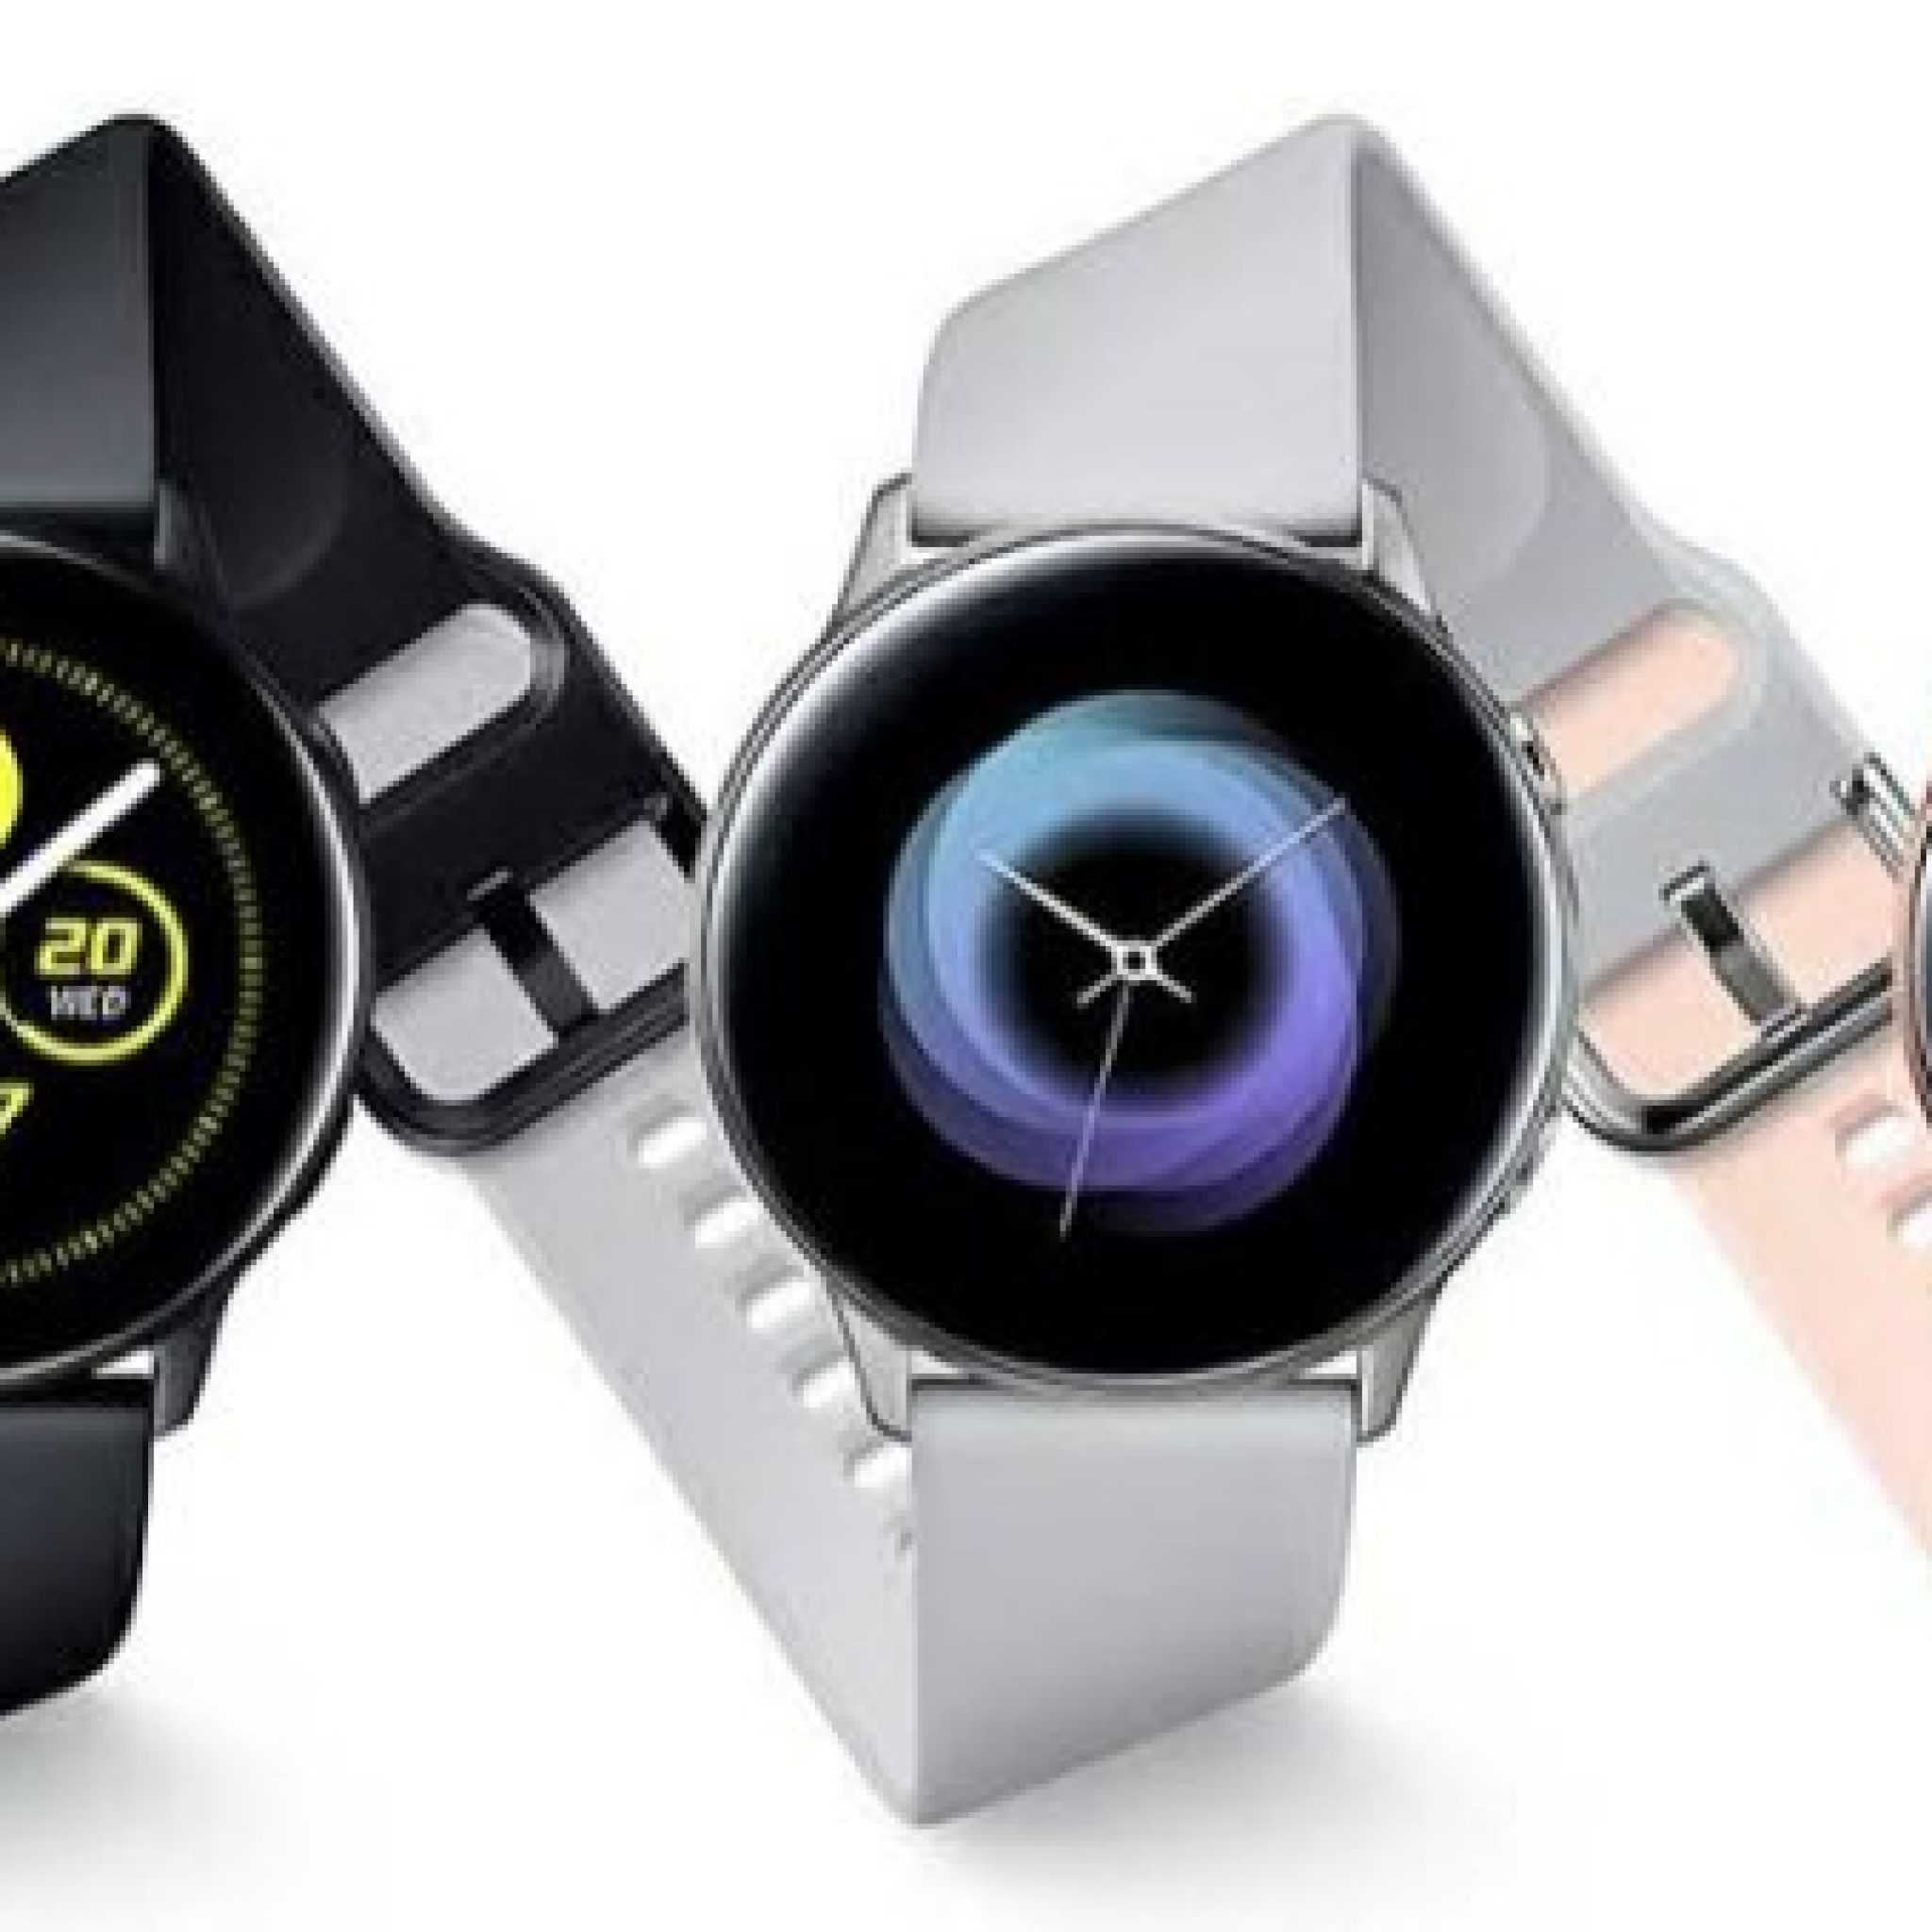 Обзор samsung galaxy watch active 2: идеальные смарт-часы для андроид